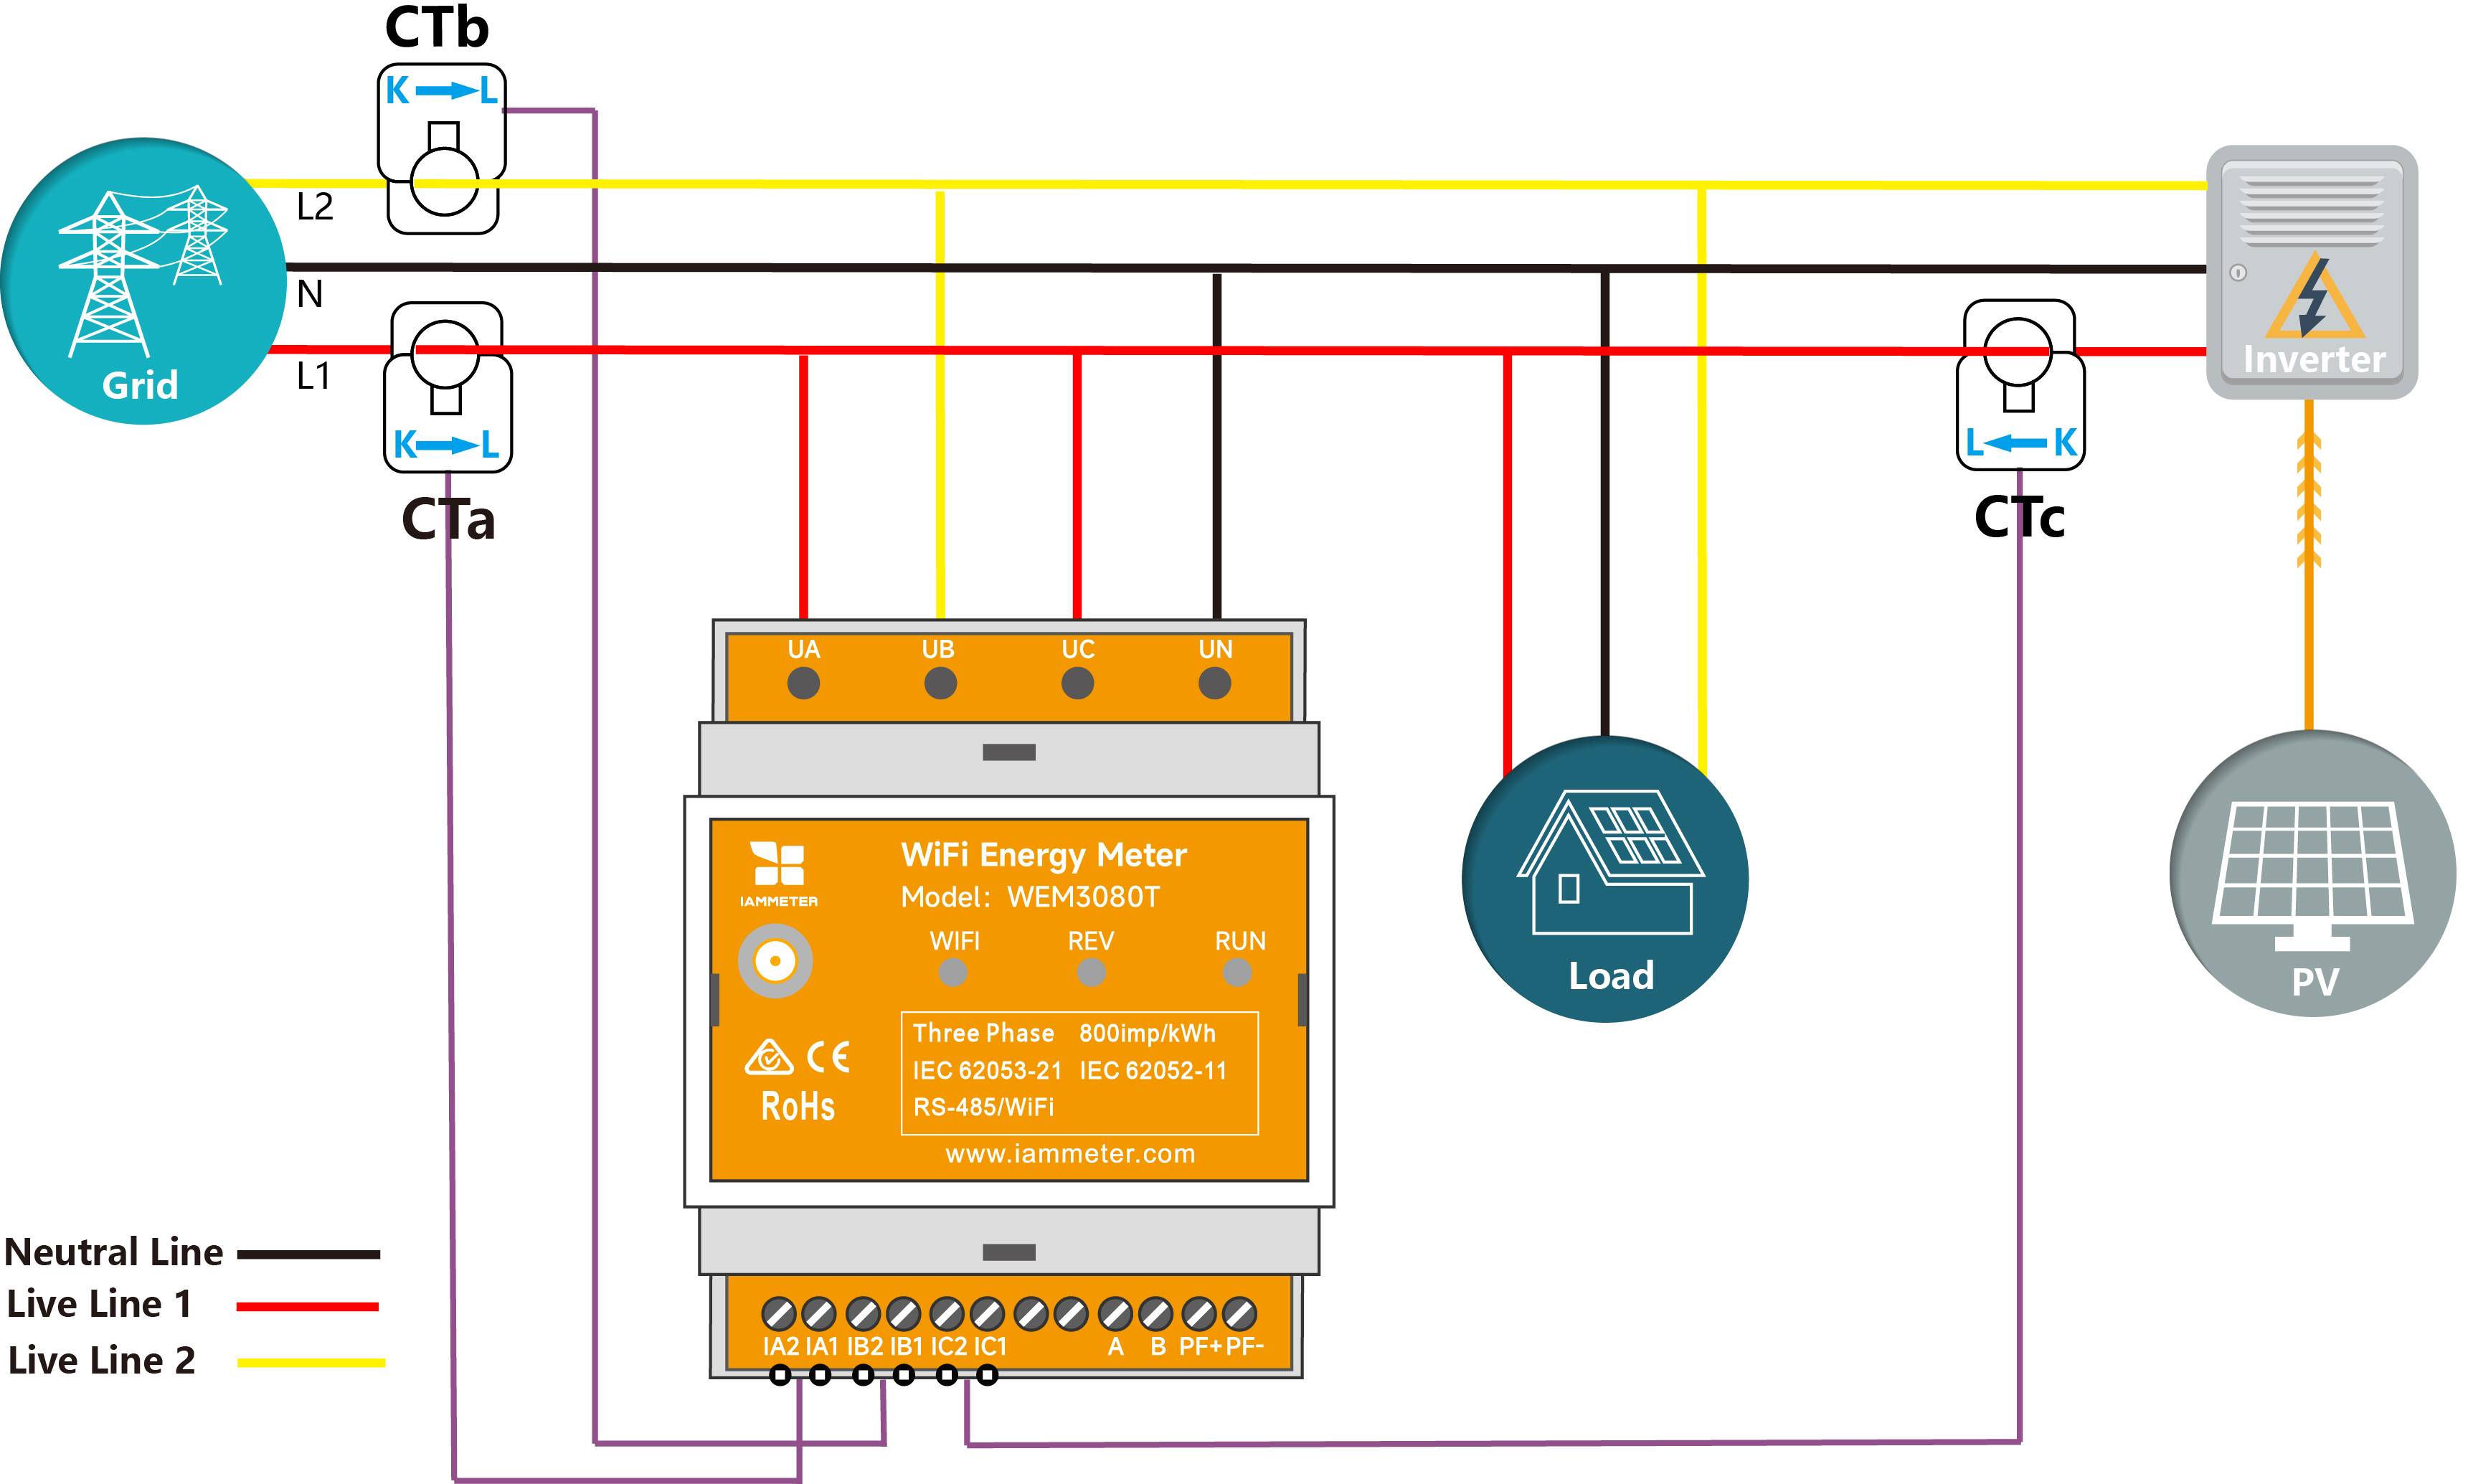 Monitoruj zarówno sieć dwufazową, jak i falownik za pomocą 3-fazowego licznika energii